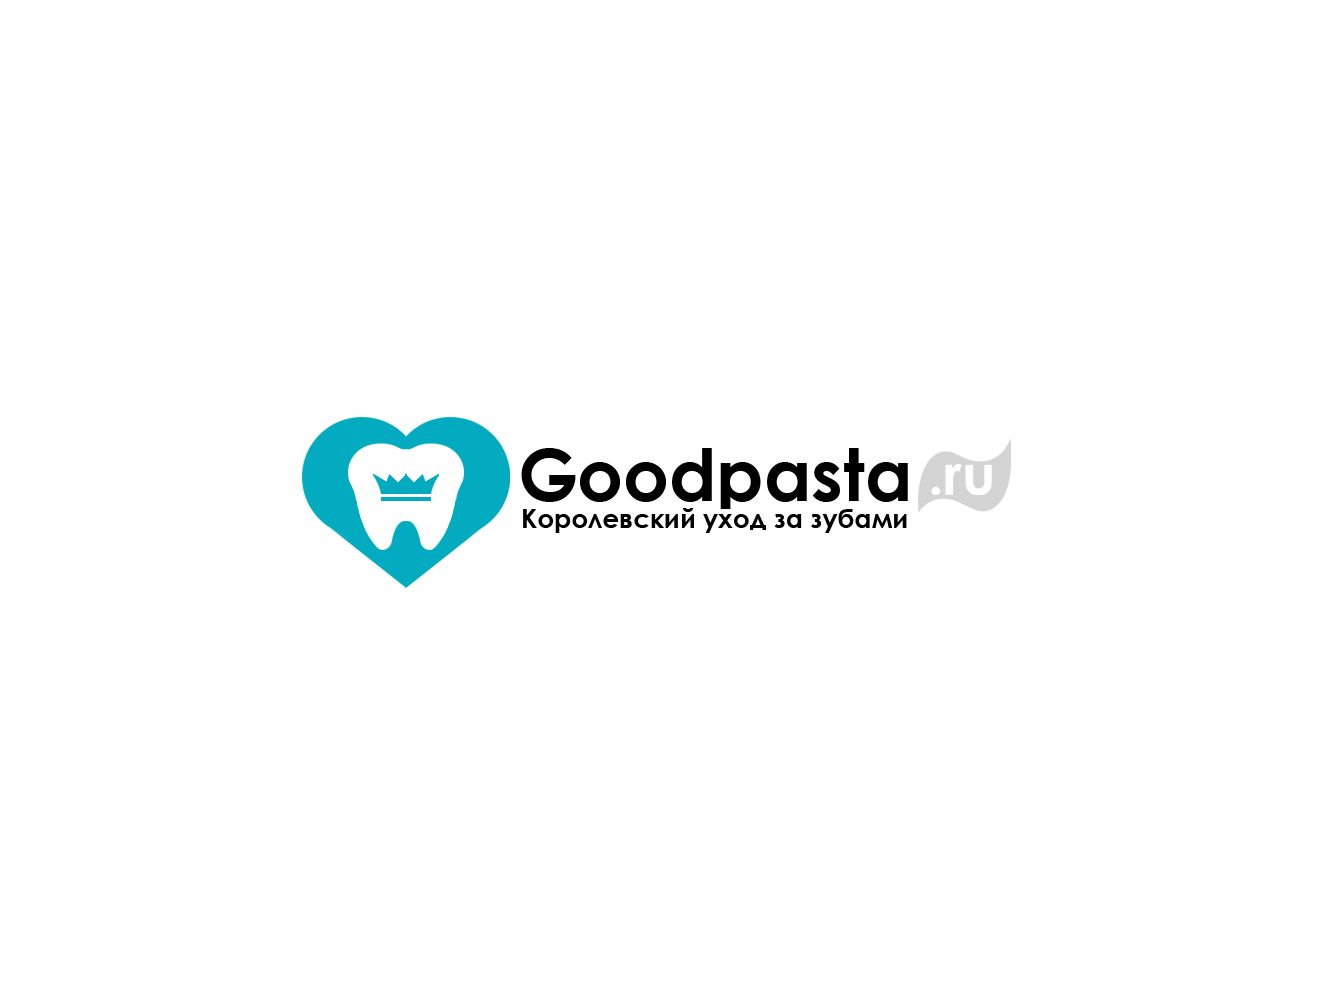 Логотип для интернет-магазина goodpasta.ru - дизайнер webgrafika